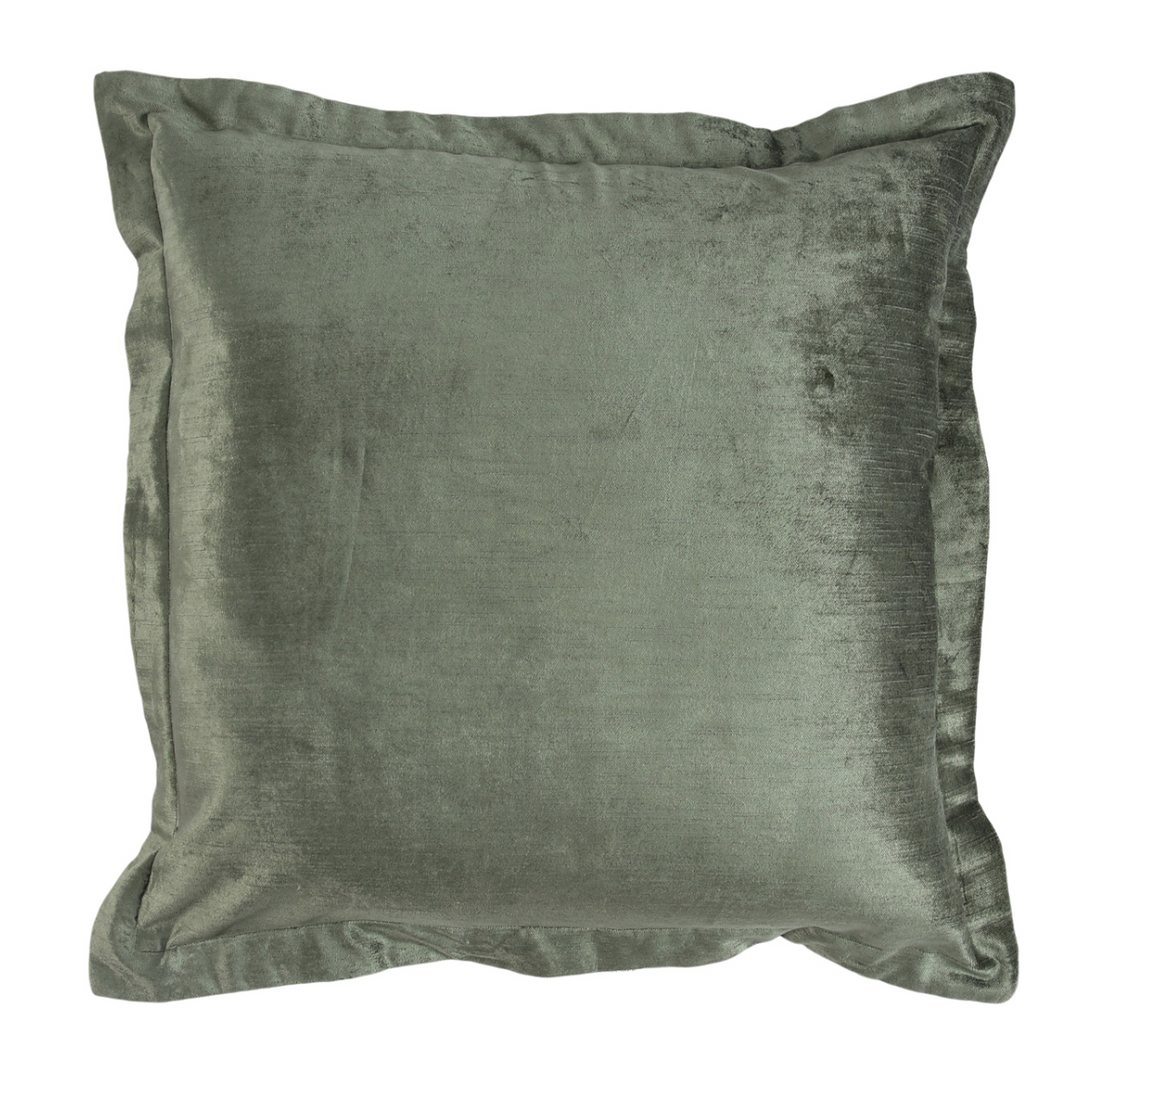 Lapis 22x22 Pillow - Sage